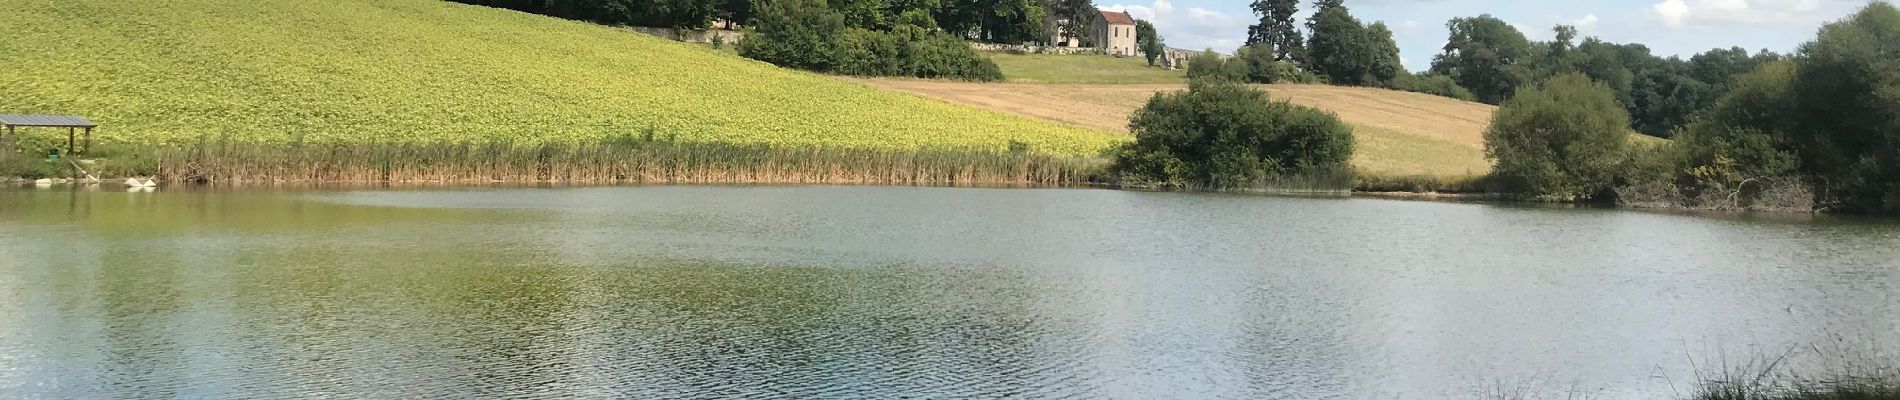 Randonnée Marche Cornille - Boucle de l étang Cornille par Pognac et Lafayardie  - Photo